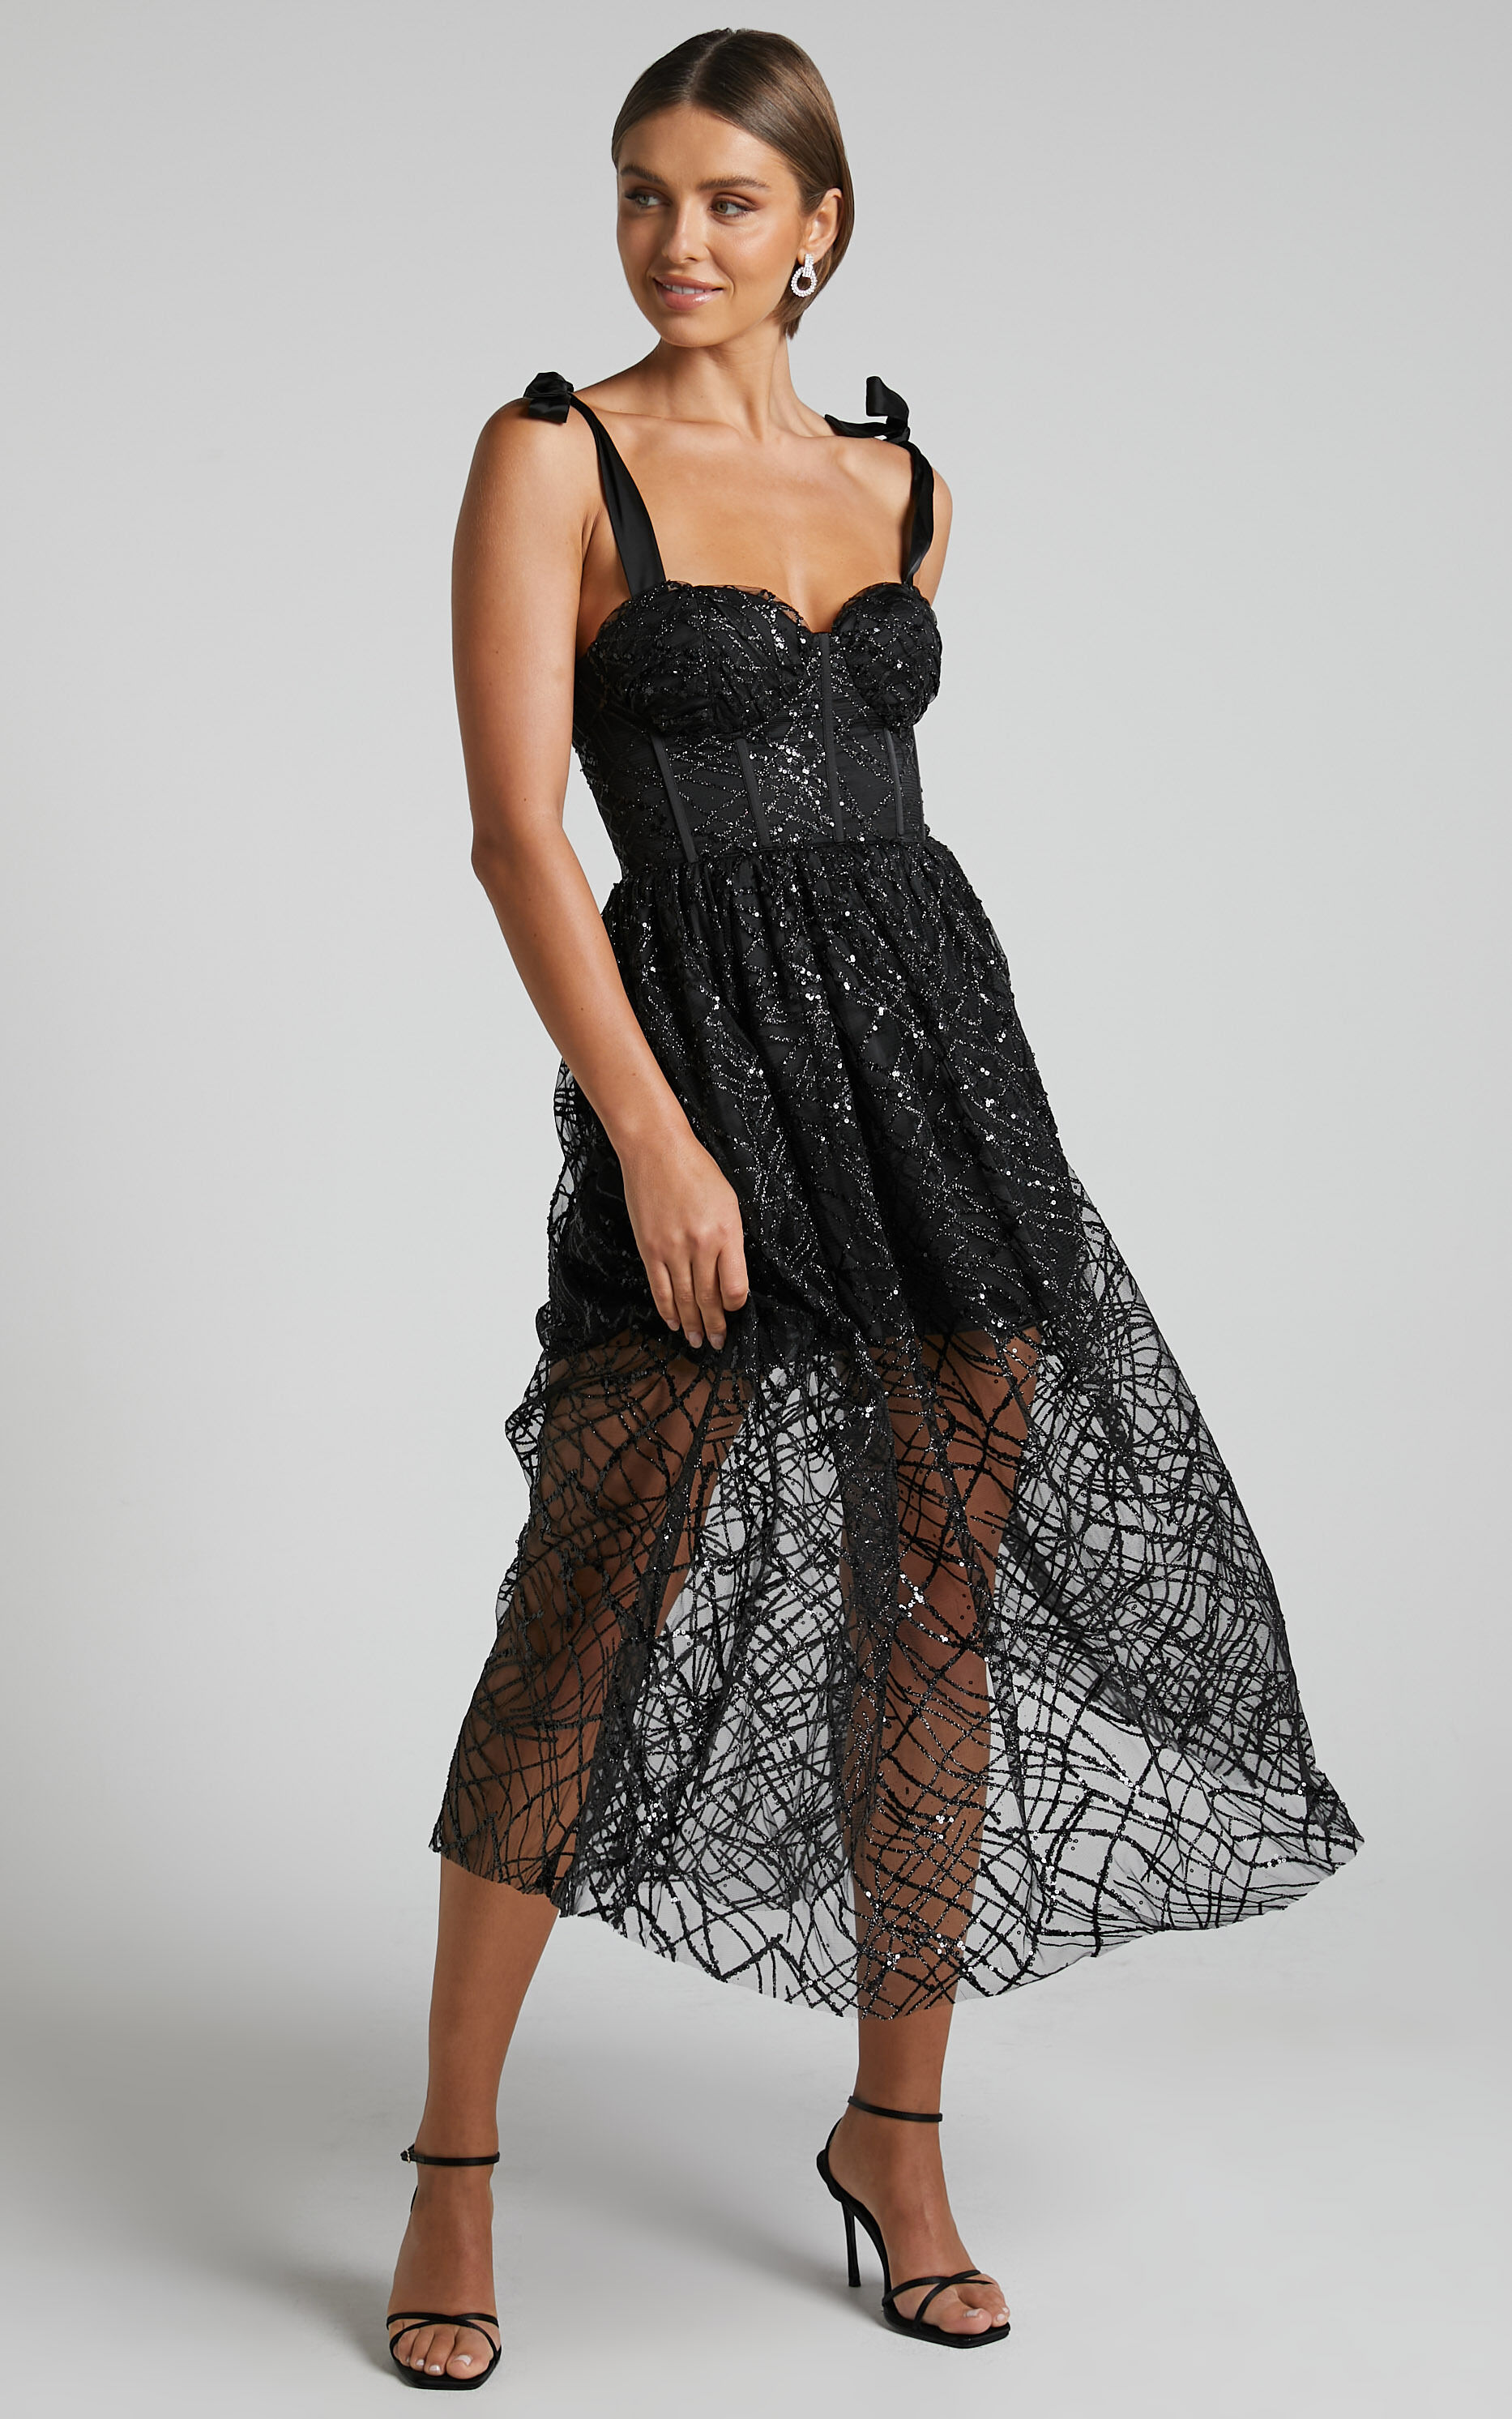 Rimea Midi Dress - Tie Shoulder Bustier Bodice Glitter Tulle Dress in Black